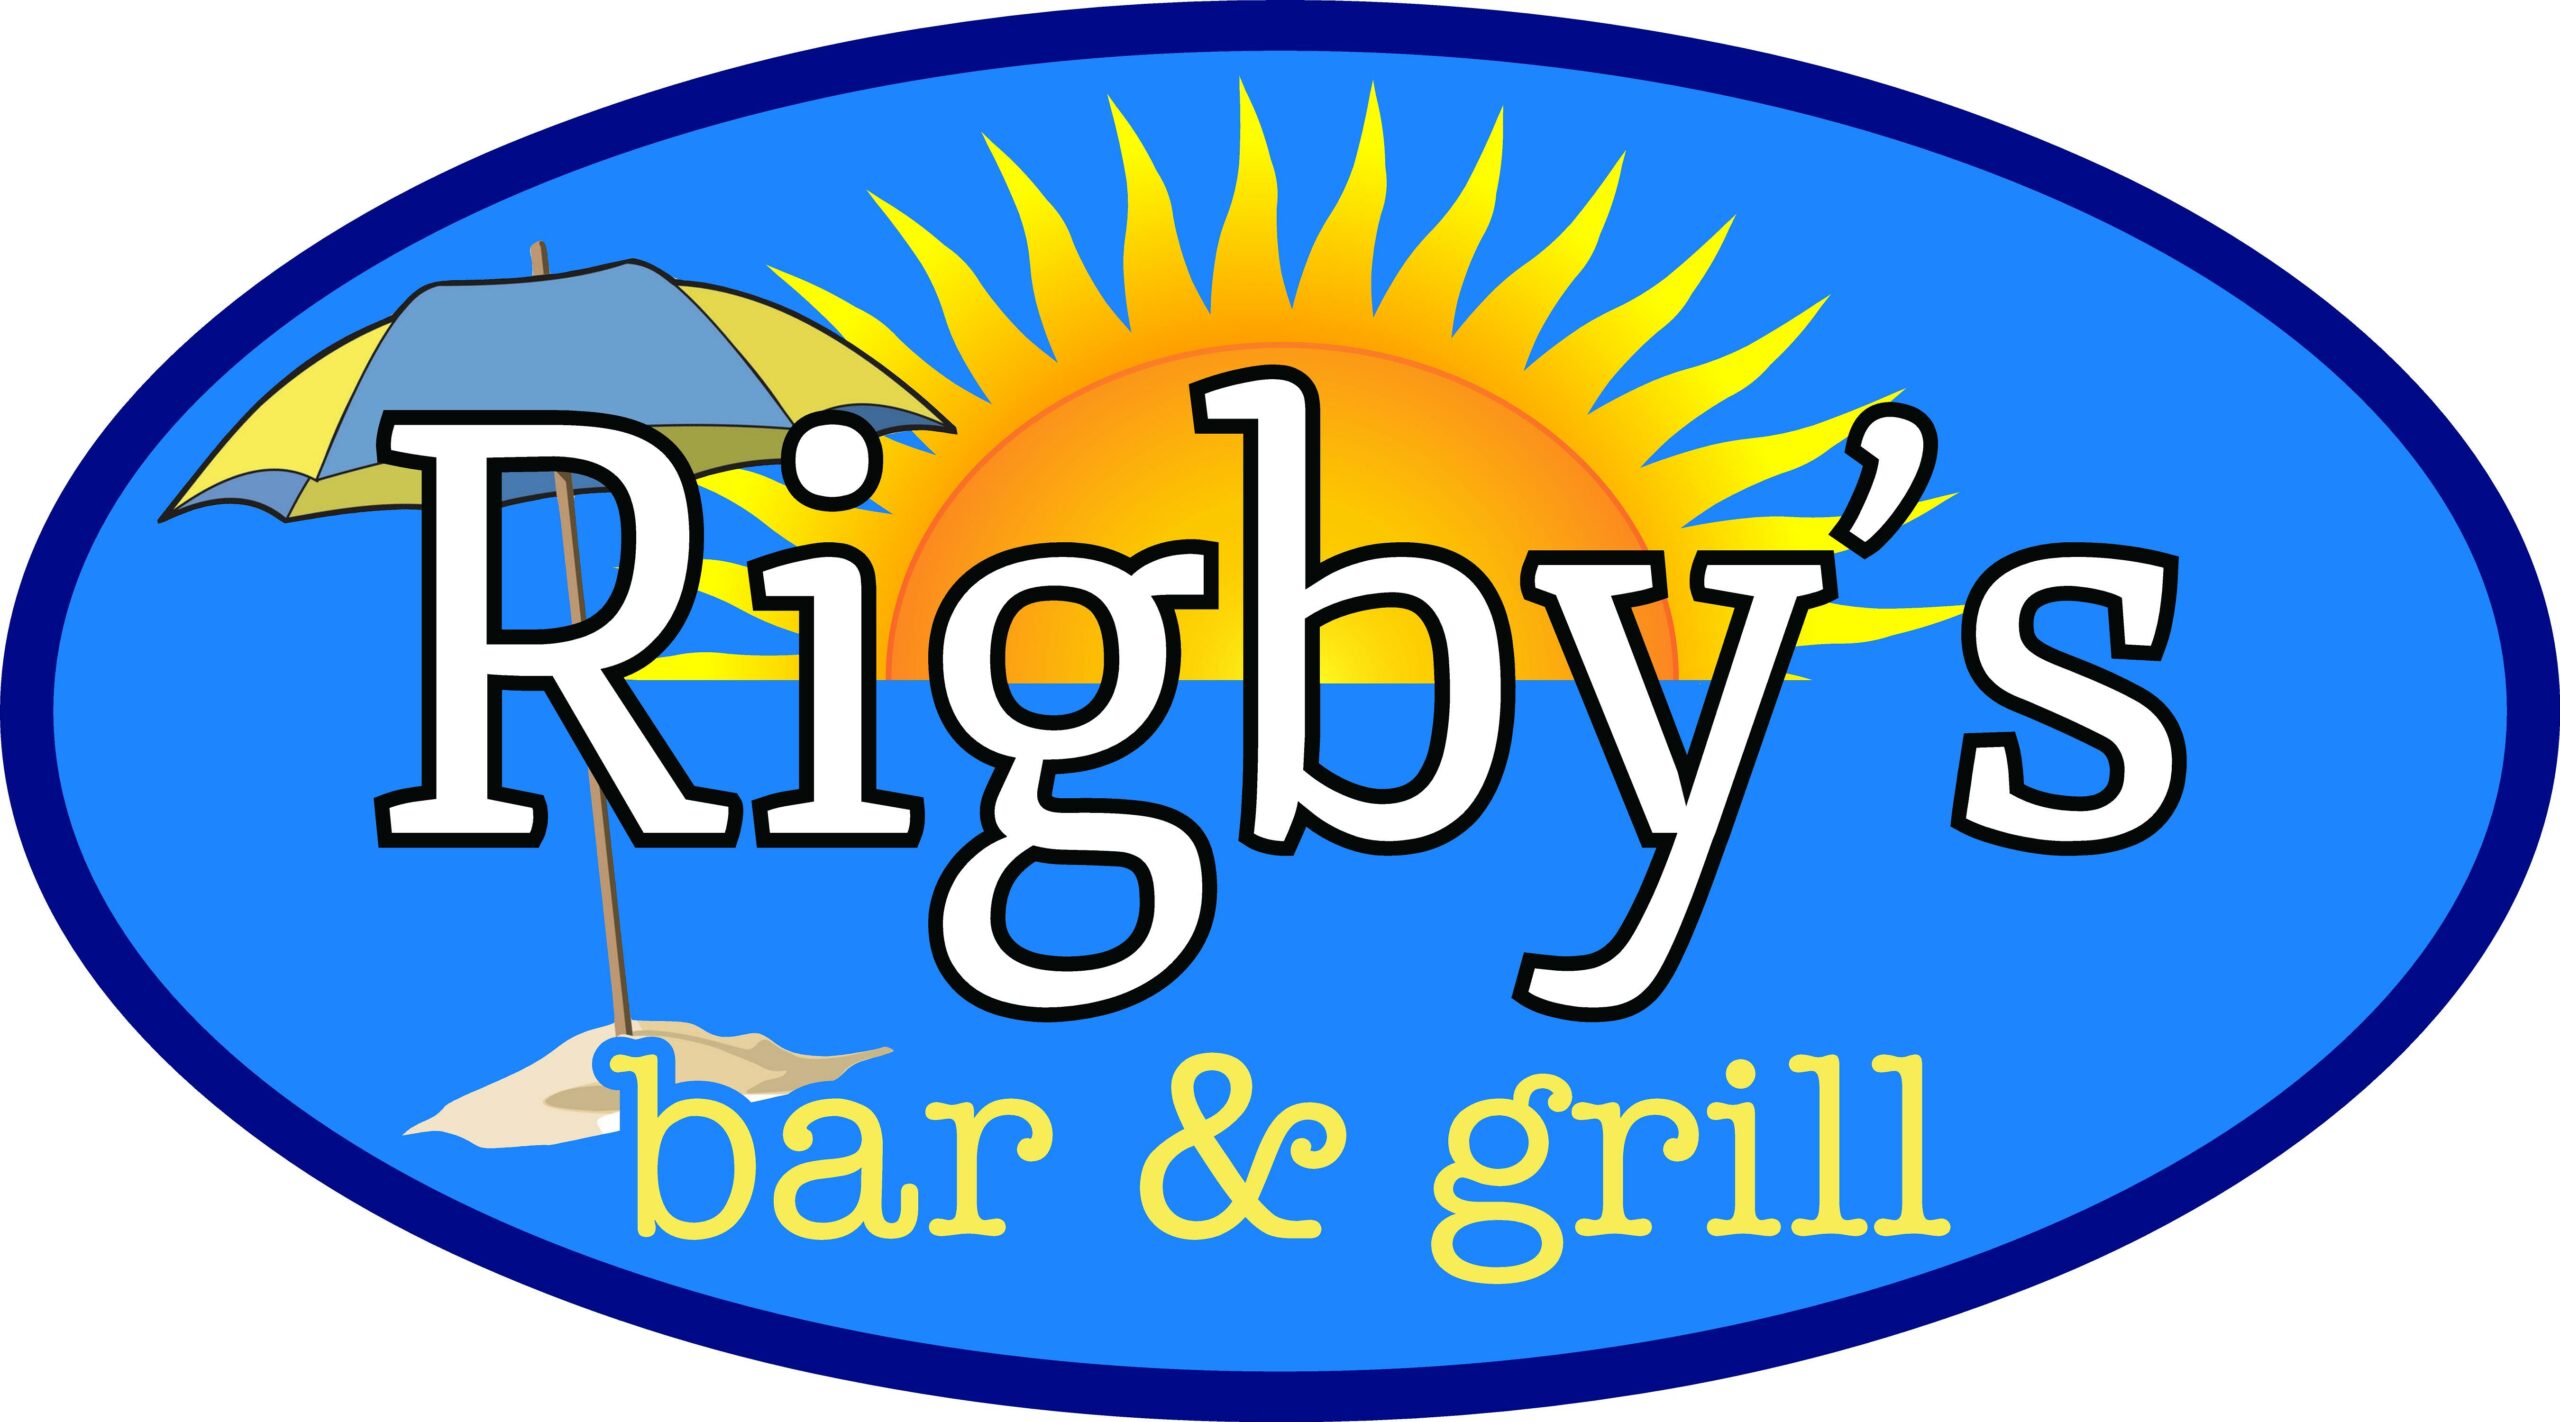 Rigby's